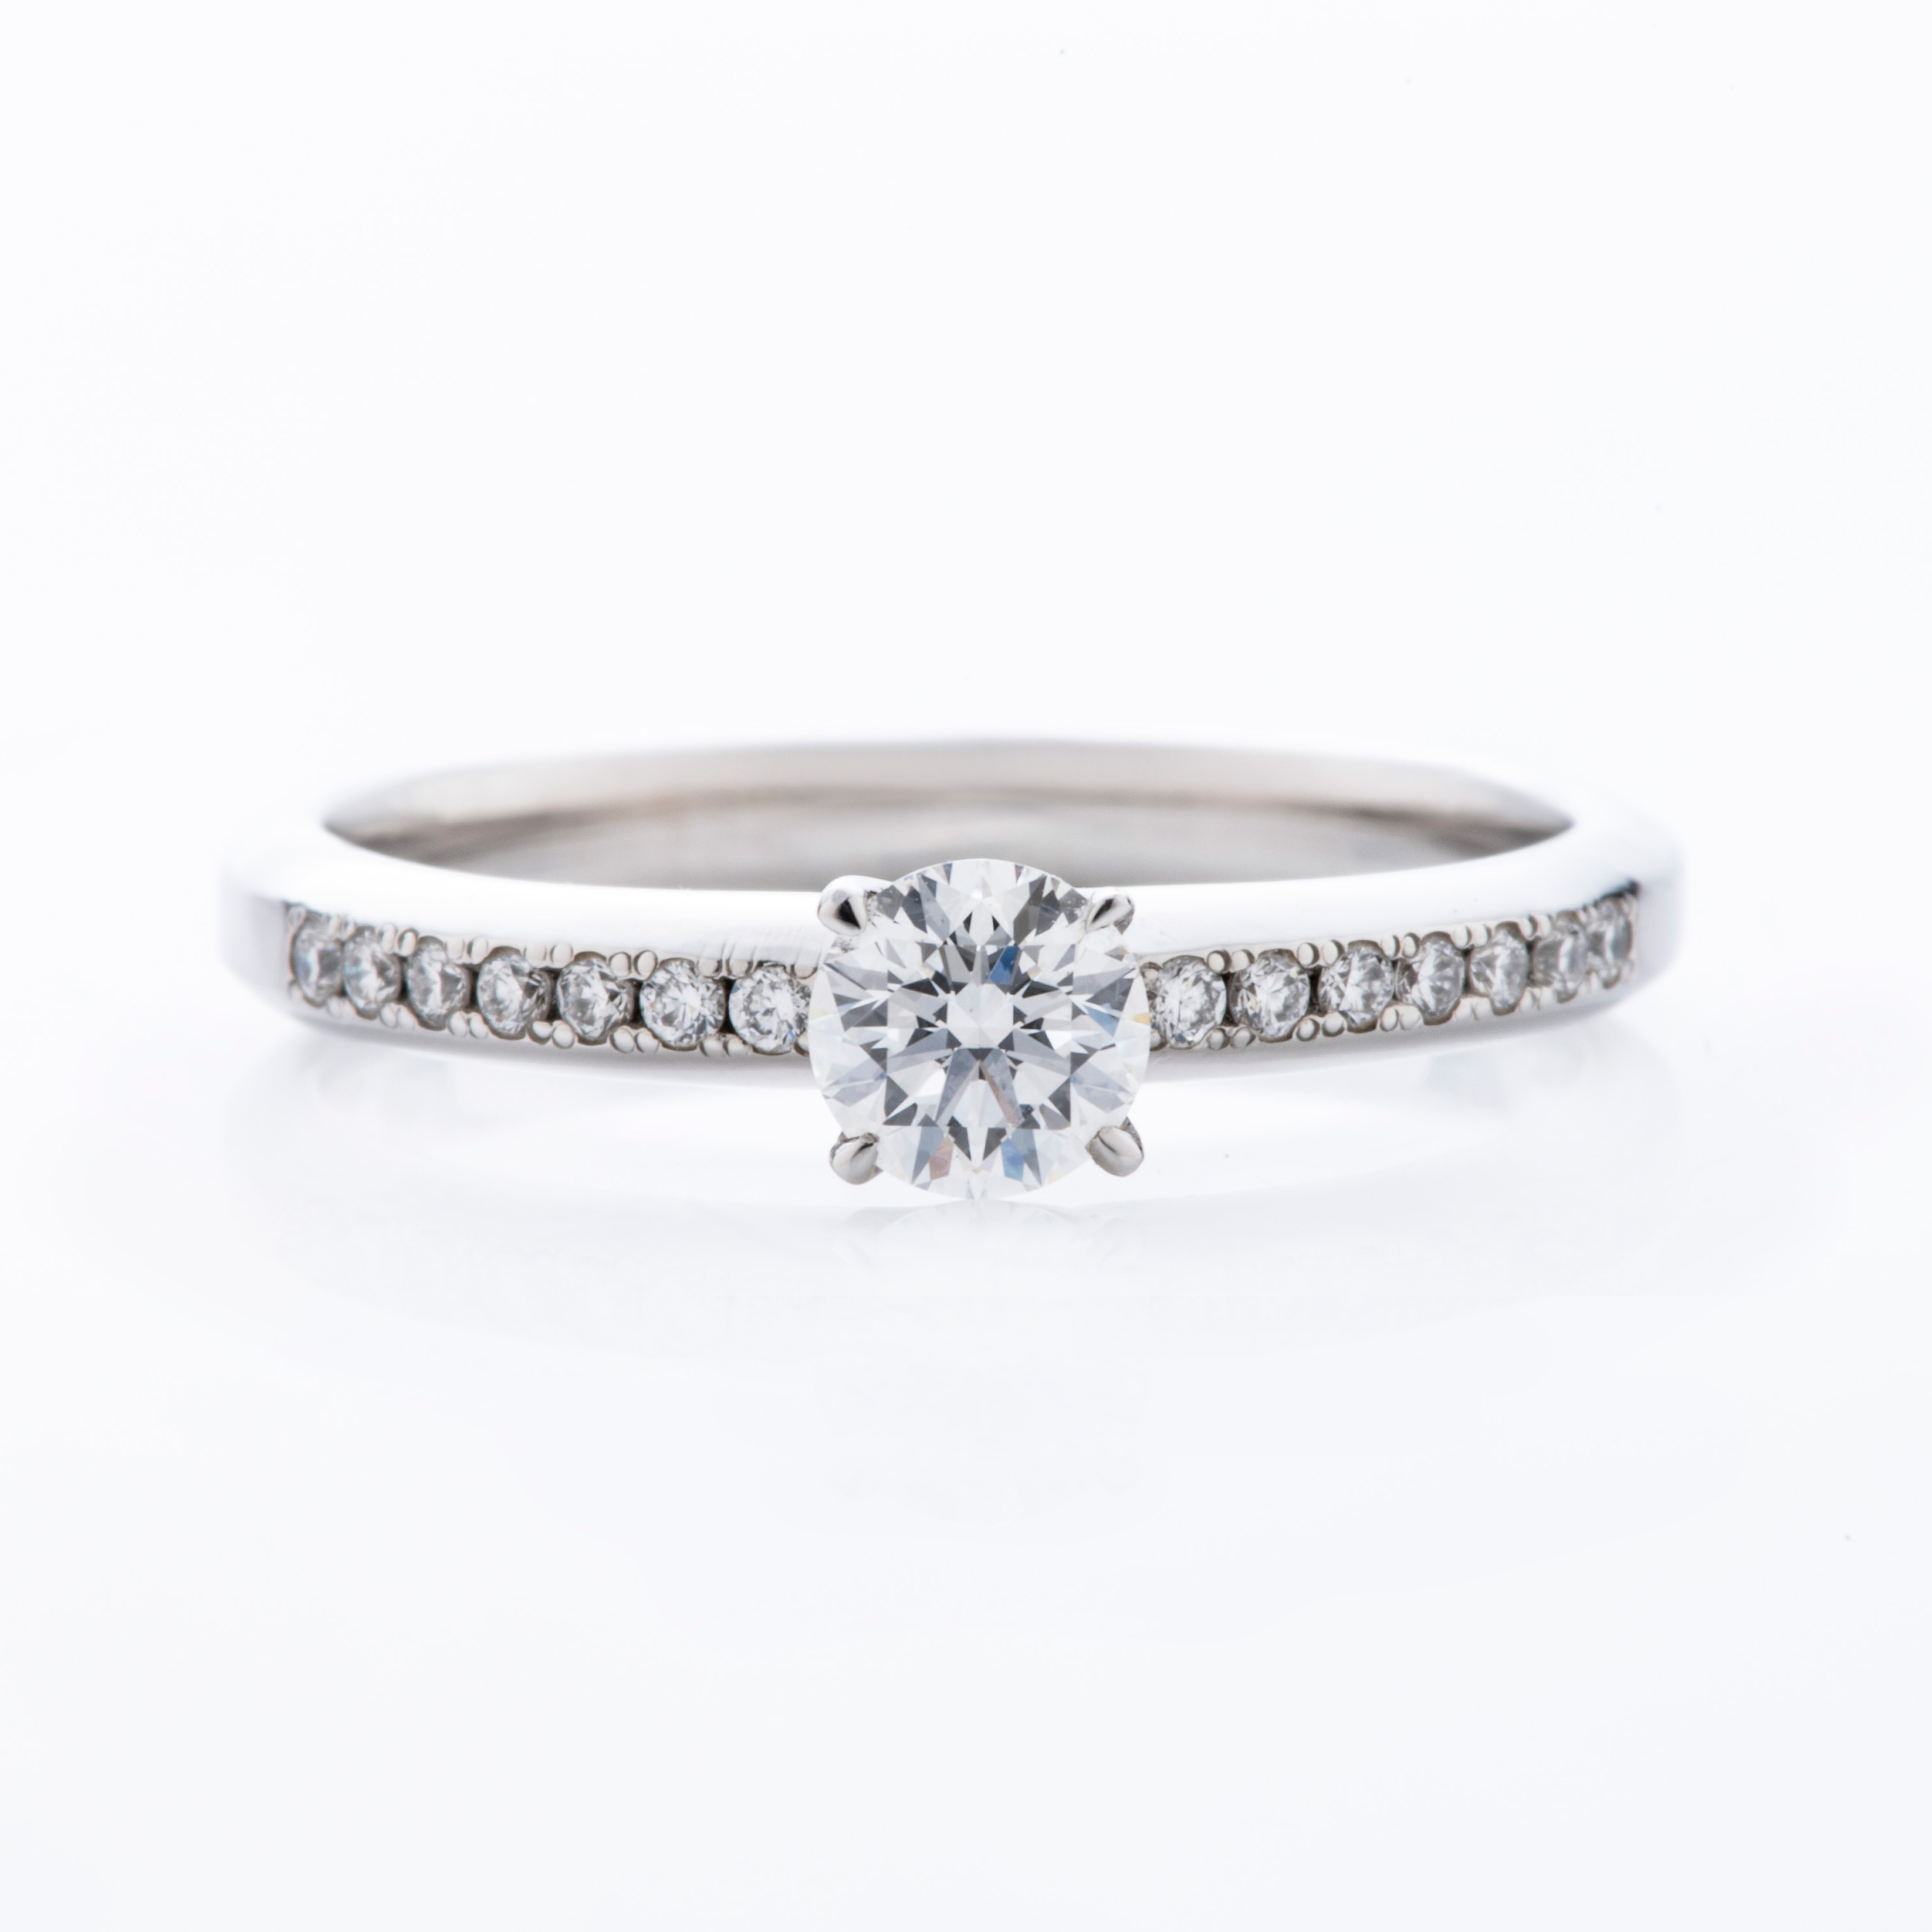 ブライダル | 福井の婚約指輪・結婚指輪 ジュエリー・スカラベ | 宝石、婚約指輪（エンゲージリング）結婚指輪（マリッジリング）の販売